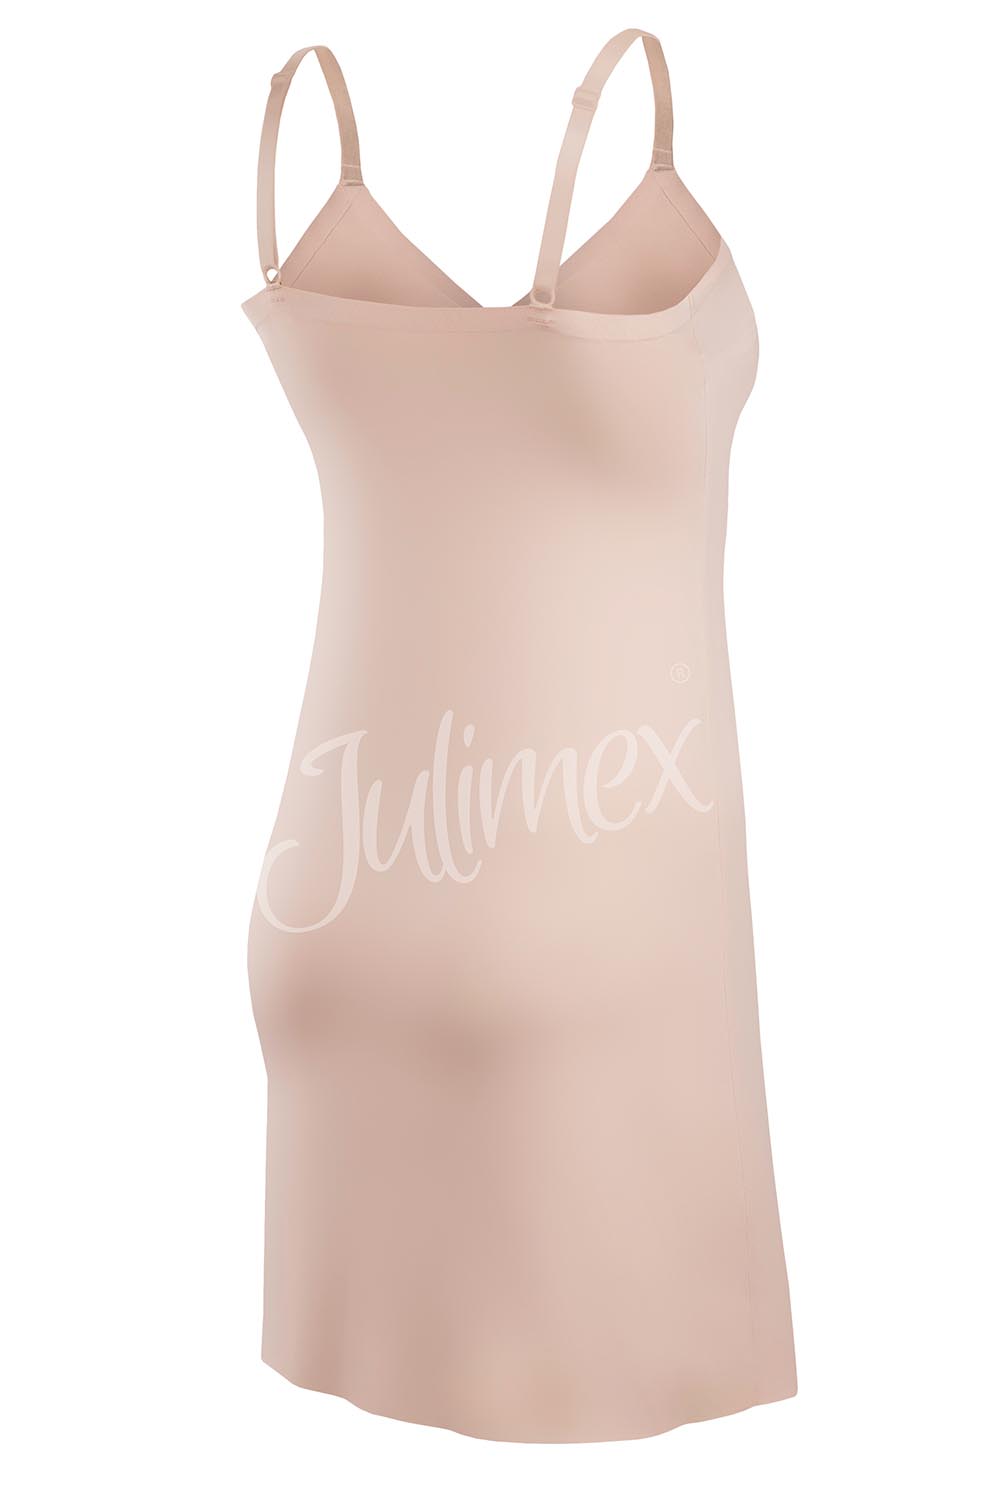 Julimex Damen Unterrock Musterlos Lingerie | & Beige Soft Smooth | slip, Beige DUmalDU